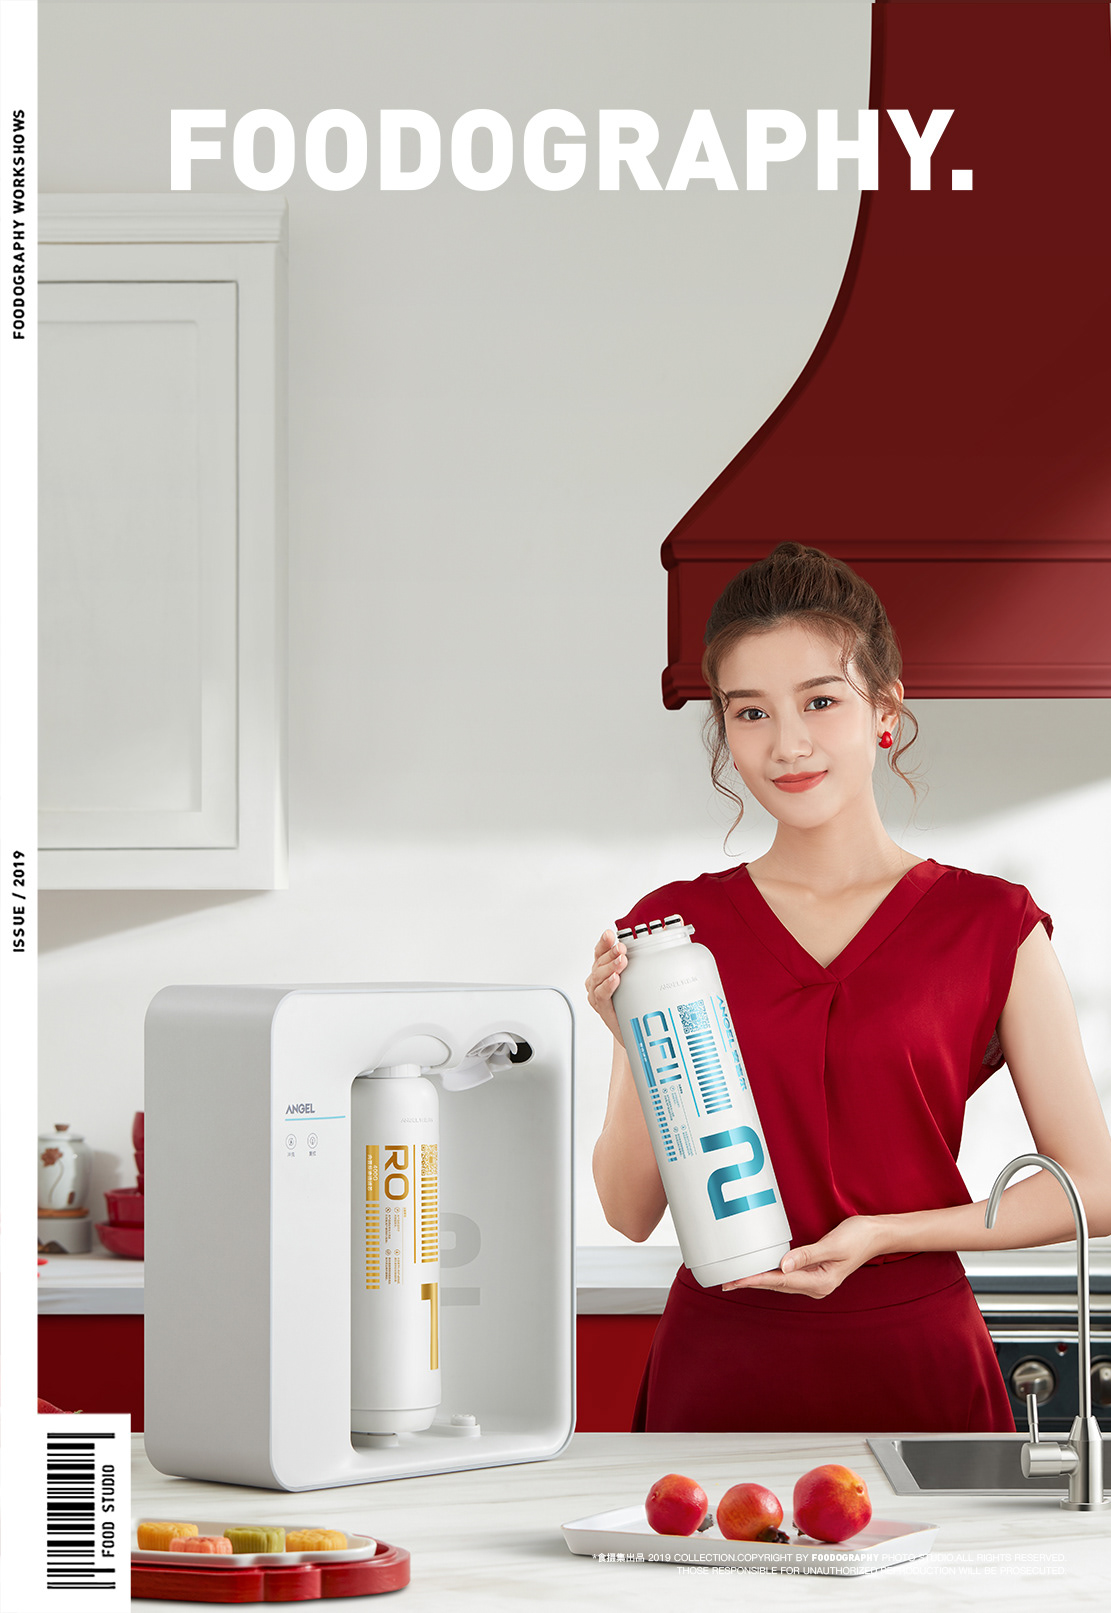 Chinese kitchen kitchen appliances red water water purifier 净水器 厨房小家电 厨房电器 安吉尔